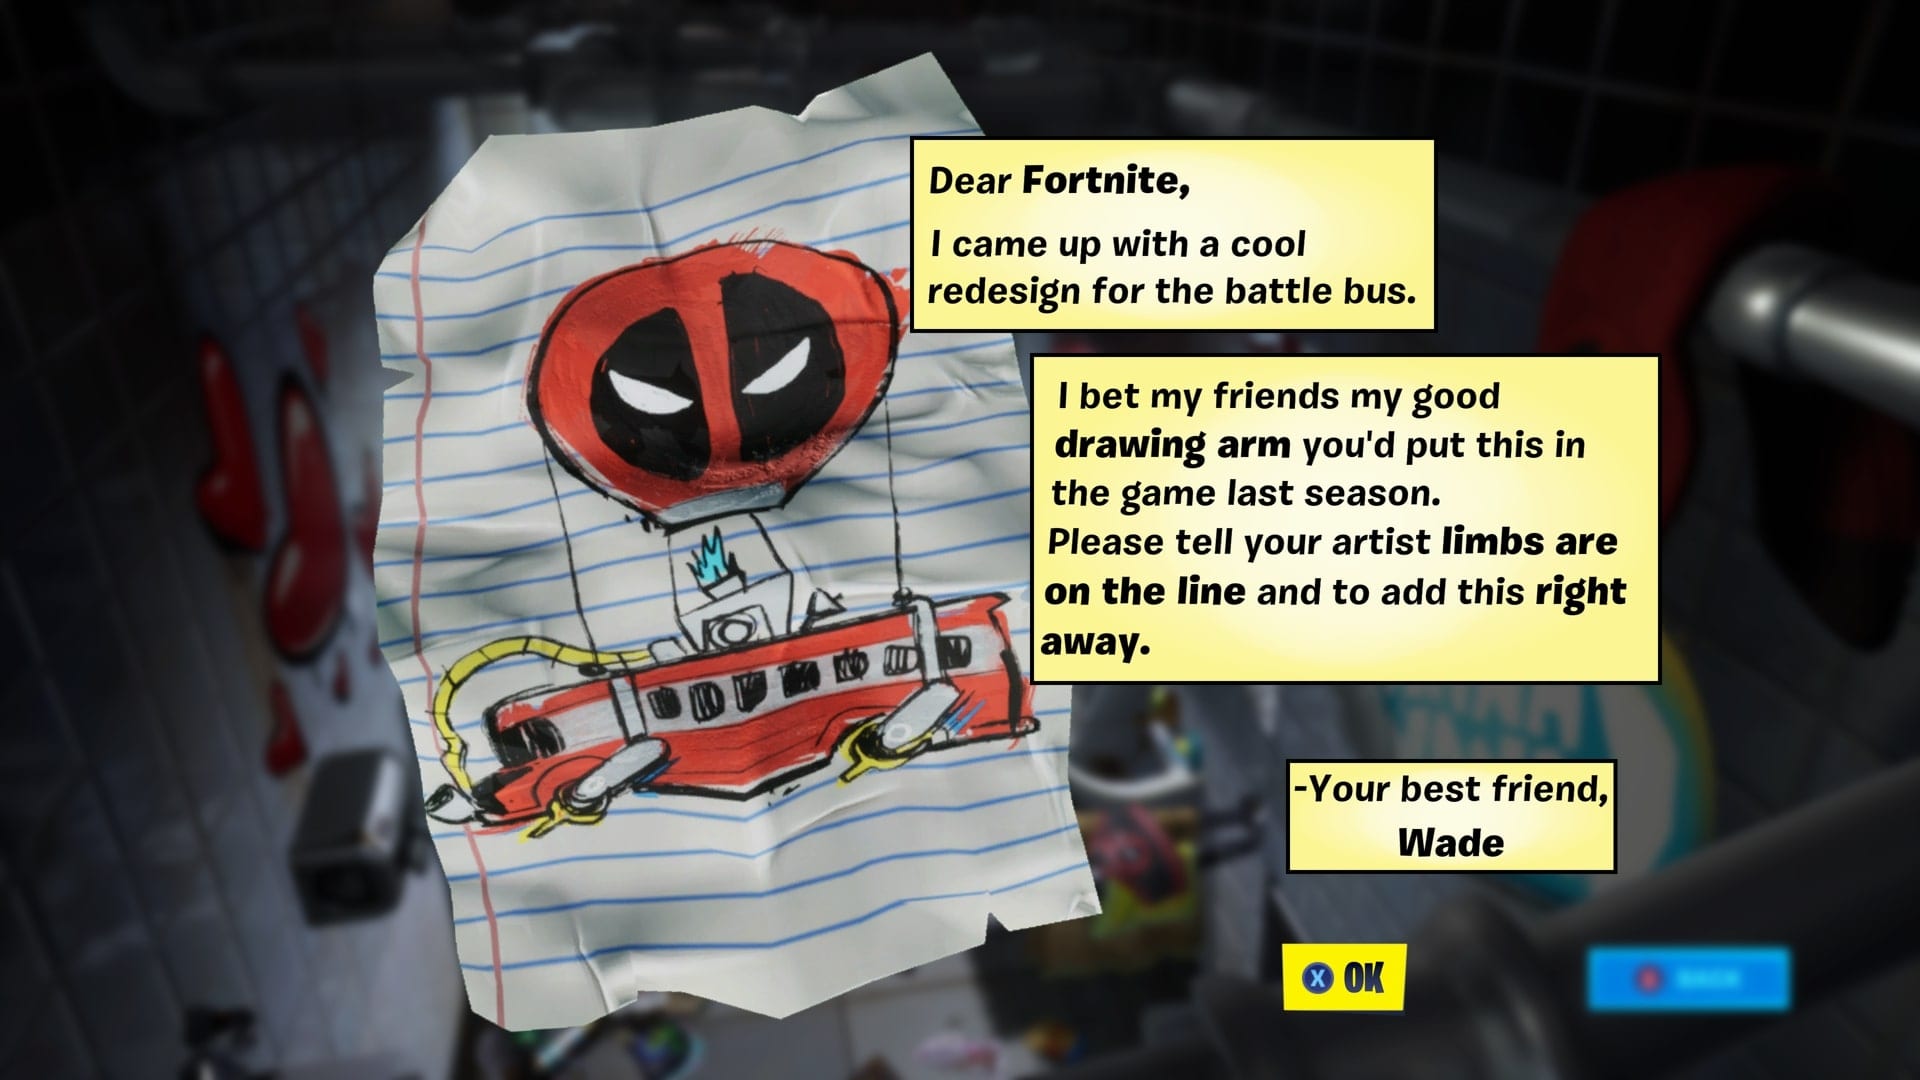 Fortnite Deadpool Letter to Epic